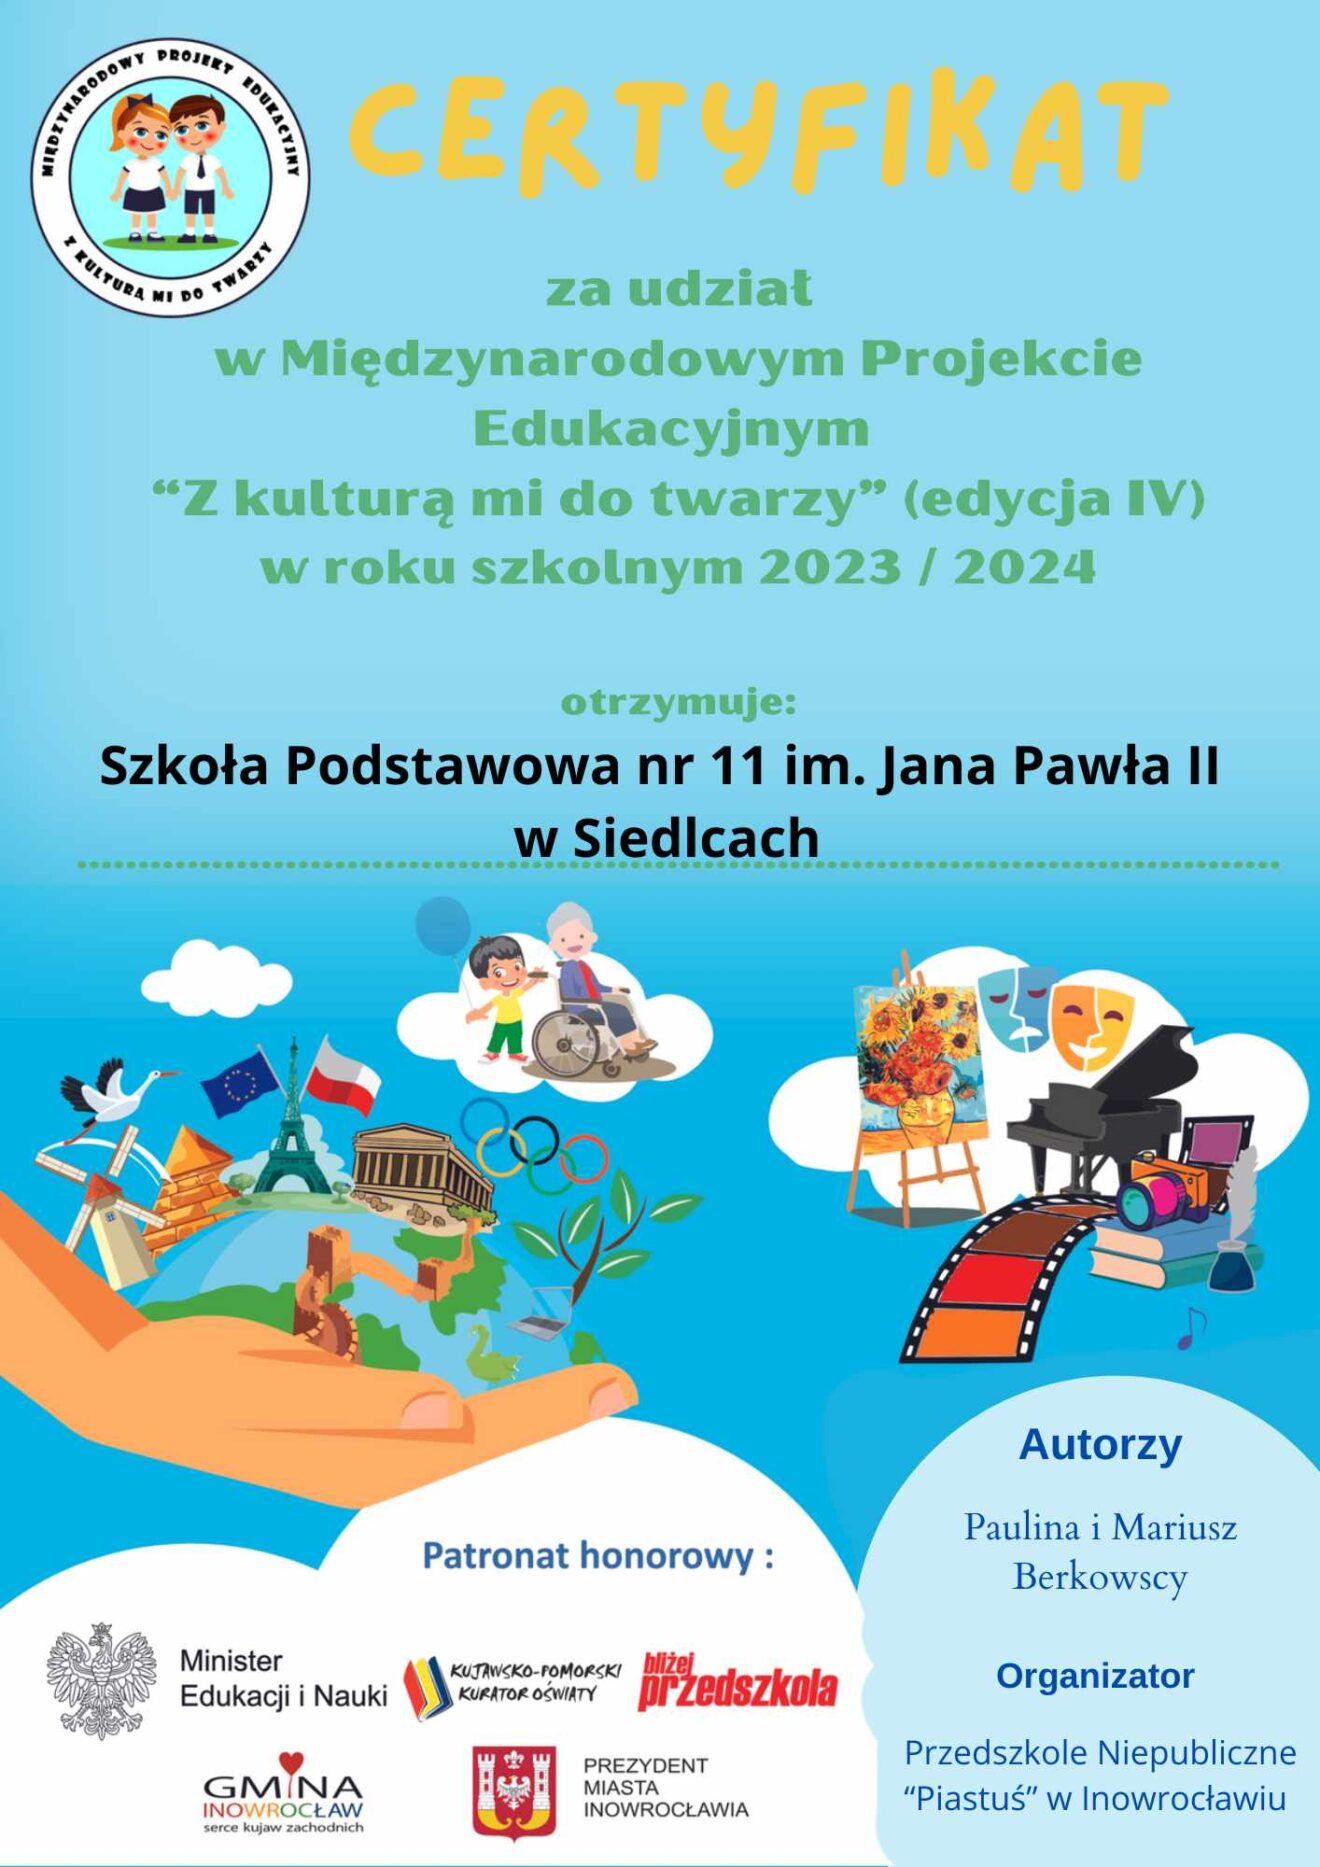 Certyfikat udziału w Międzynarodowym Projekcie Edukacyjnym “Z kulturą mi do twarzy” dla Szkoły Podstawowej nr 11 im. Jana Pawła II w Siedlca.